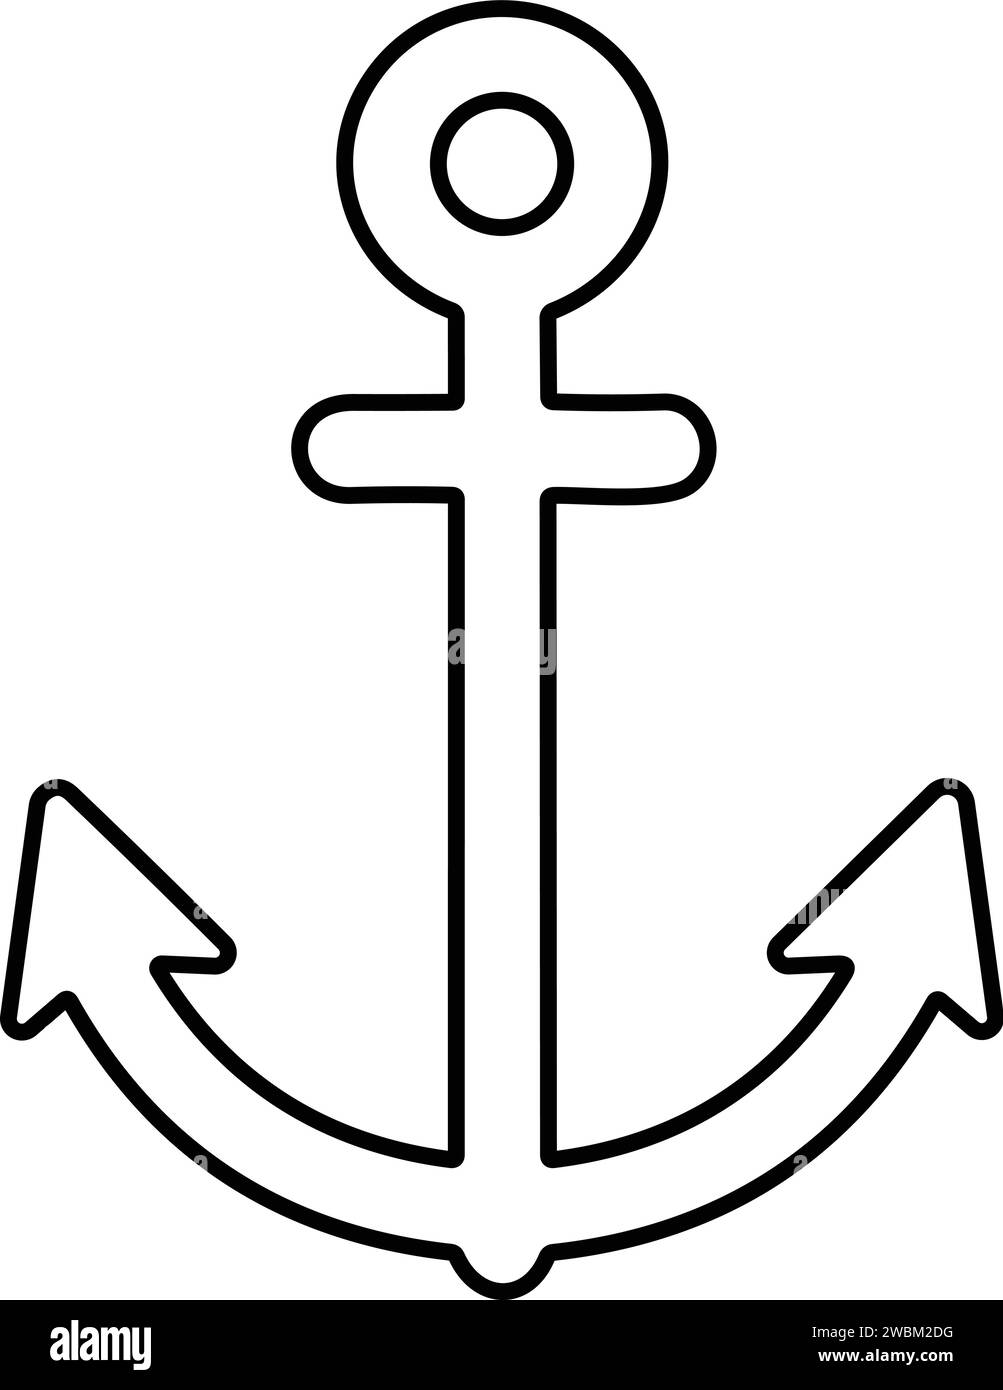 Anchor icon. Anchor in sea. Nautical symbol. Simple anchor line style stock vector Stock Vector